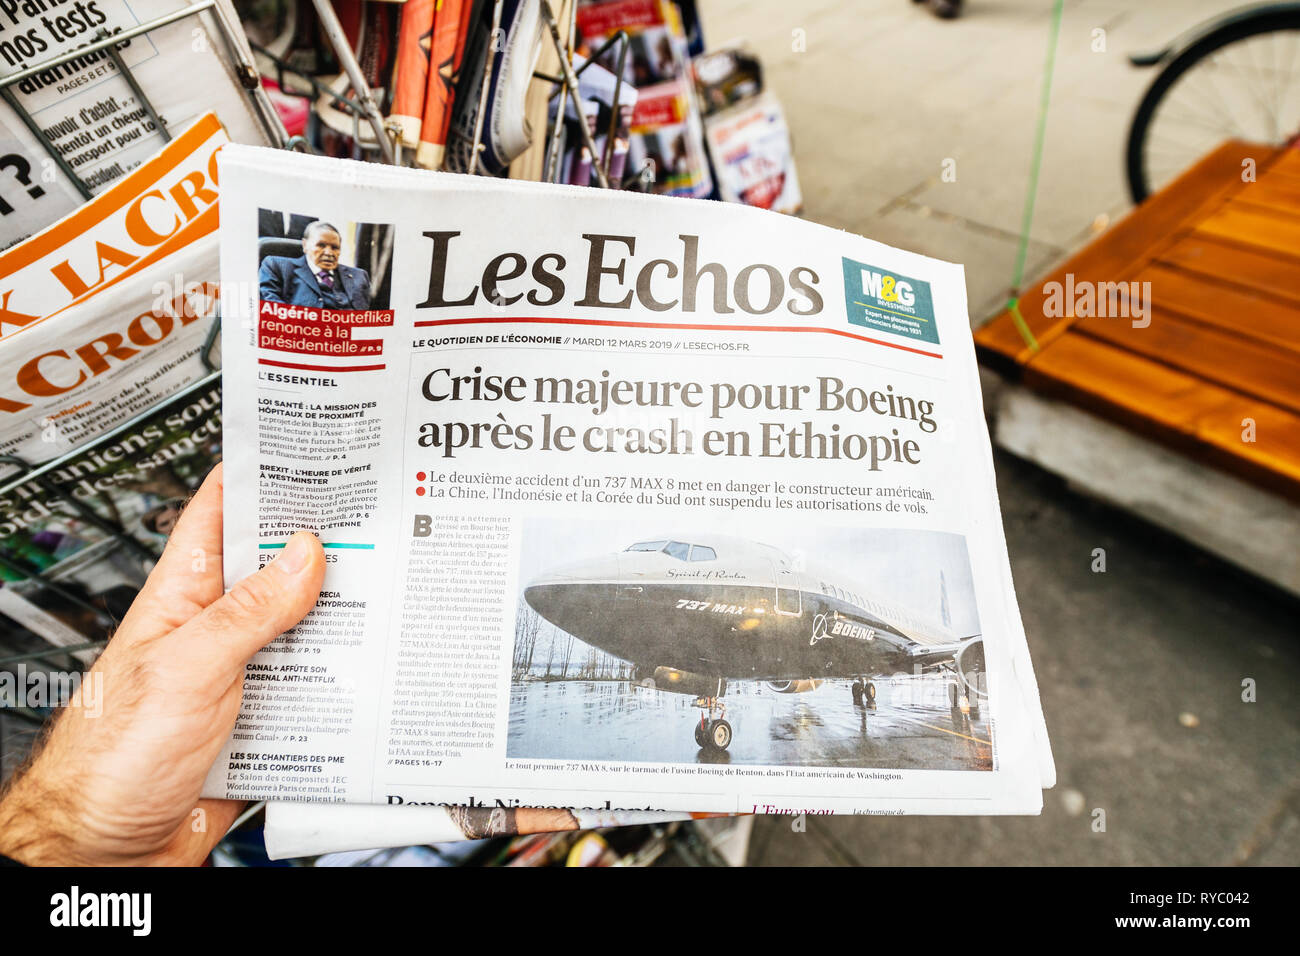 Paris, Frankreich - Mar 12, 2019: Mann POV kaufen die Tageszeitung Les Echos mit Artikel über große Krise für Boeing nach Crash Unfall in Äthiopien Stockfoto